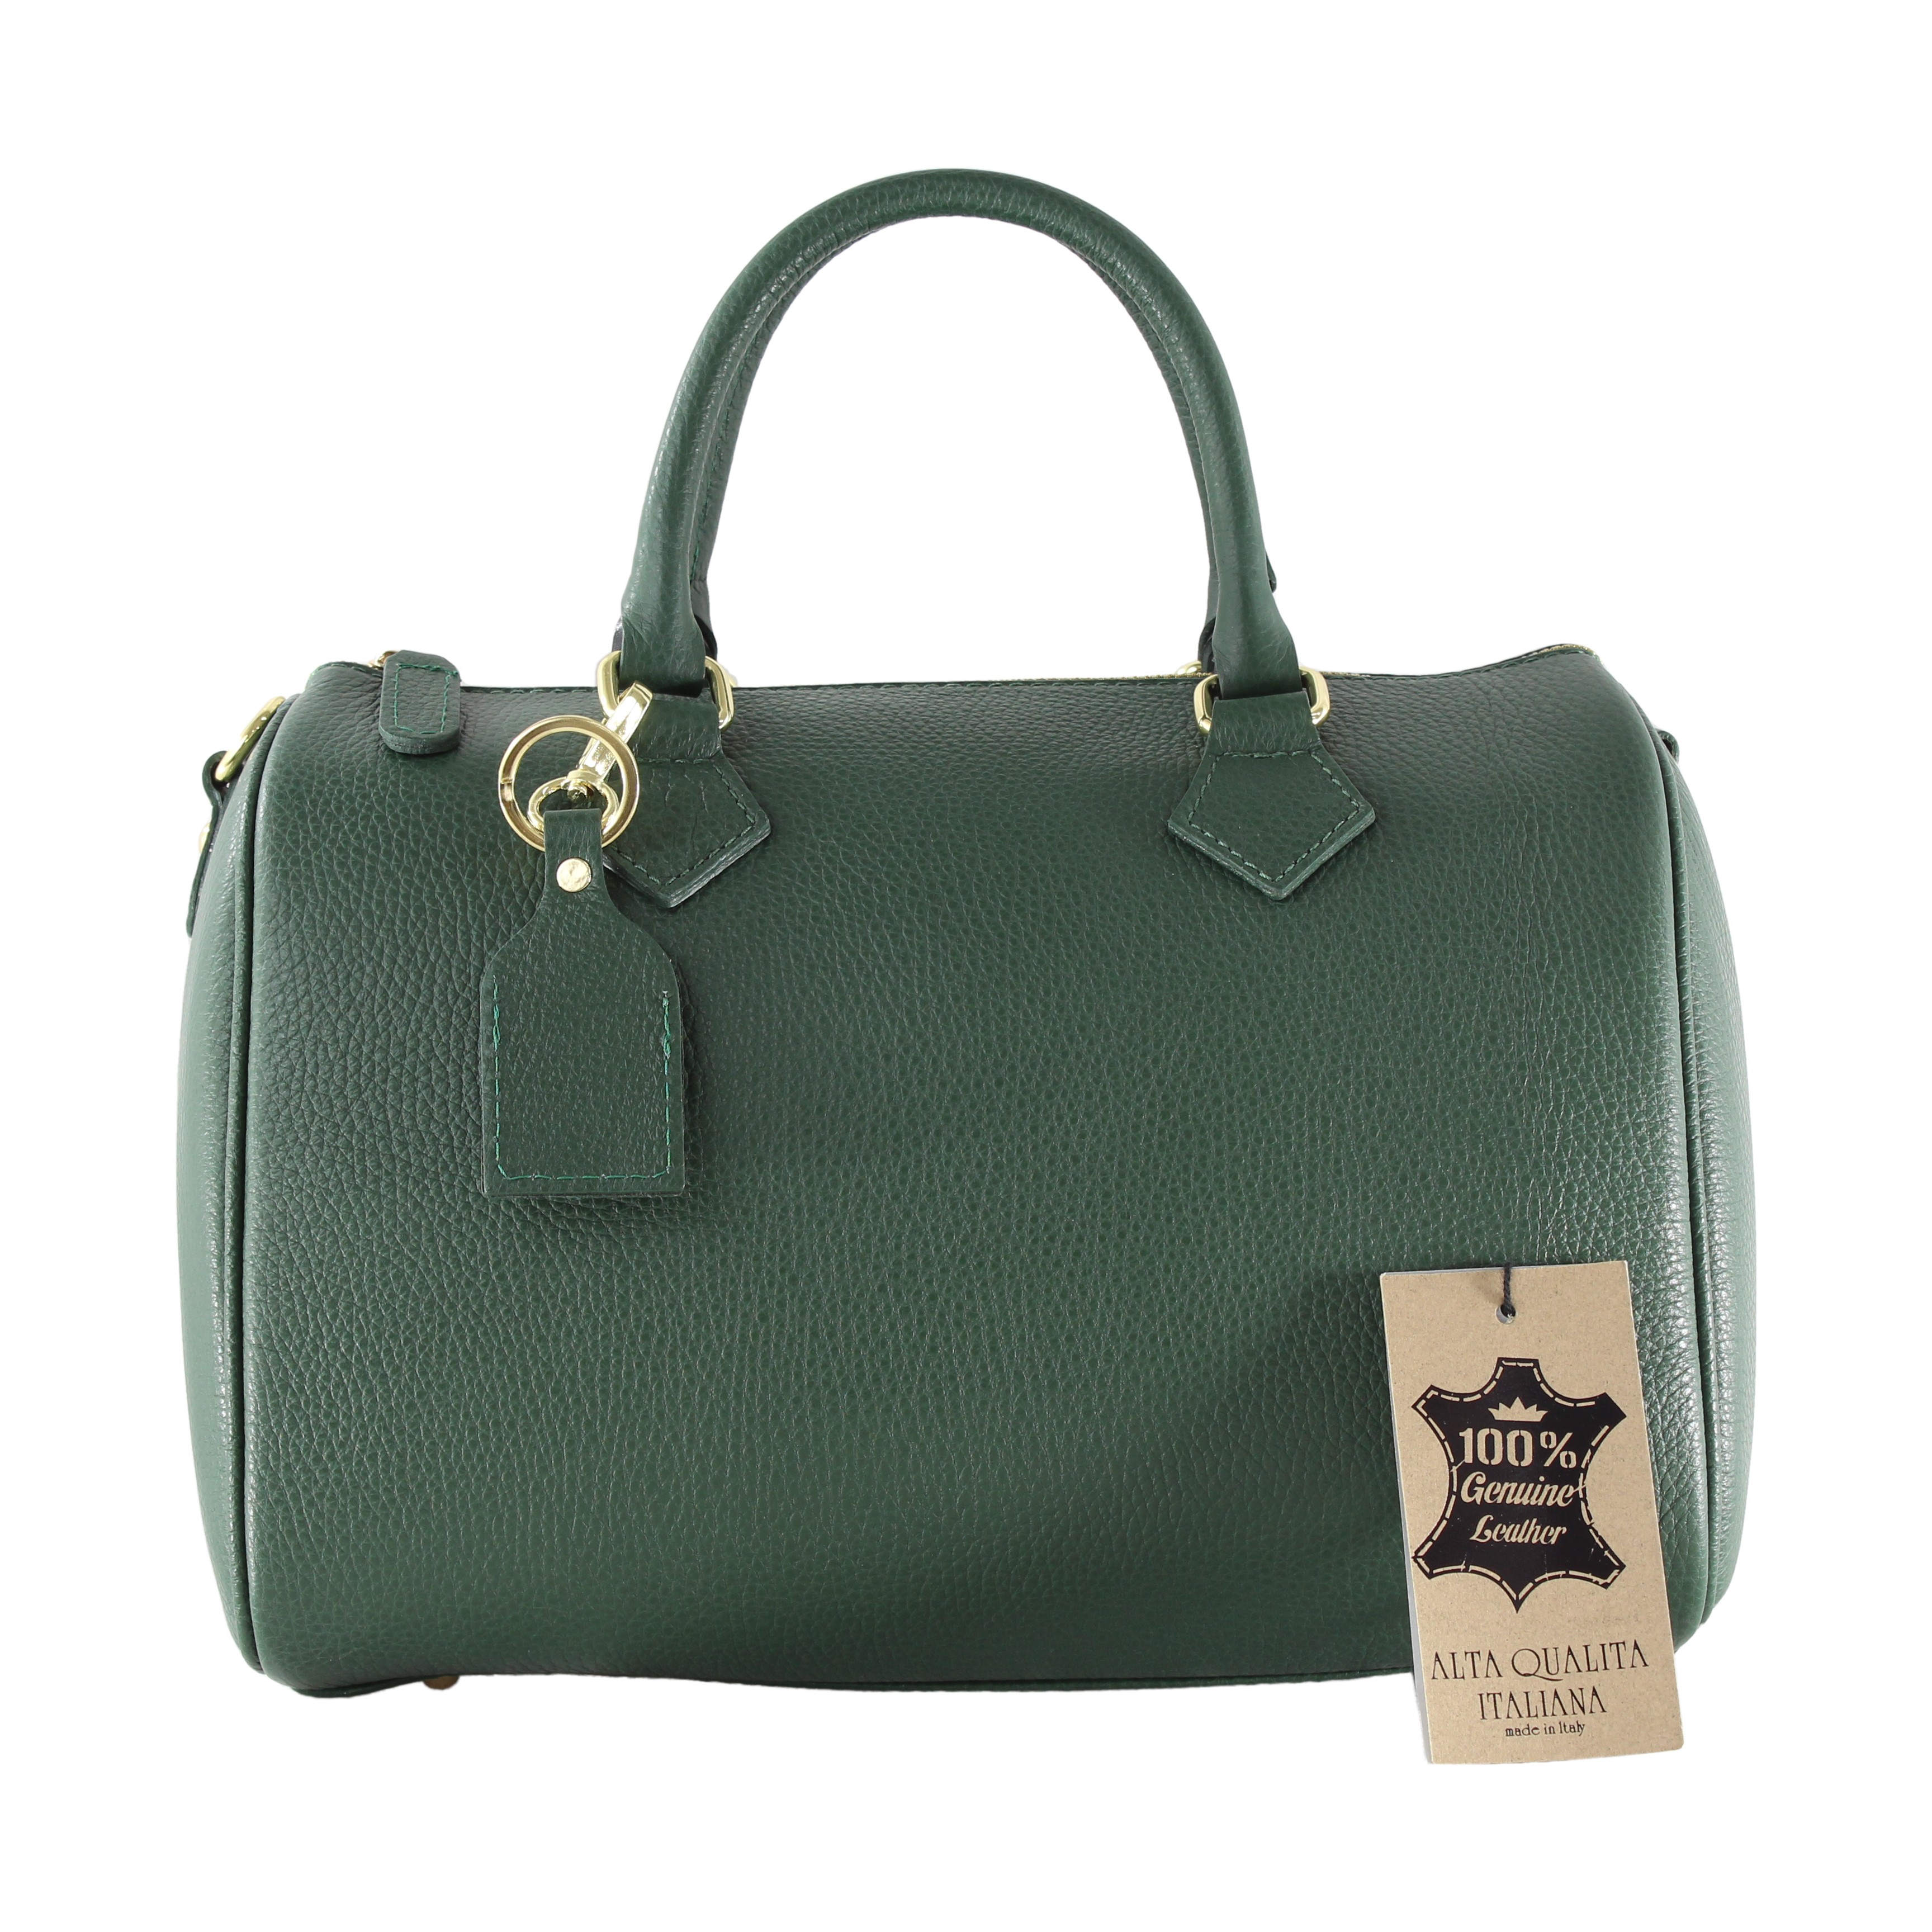 Designová větší tmavě zelená kožená kabelka do ruky Kinsley